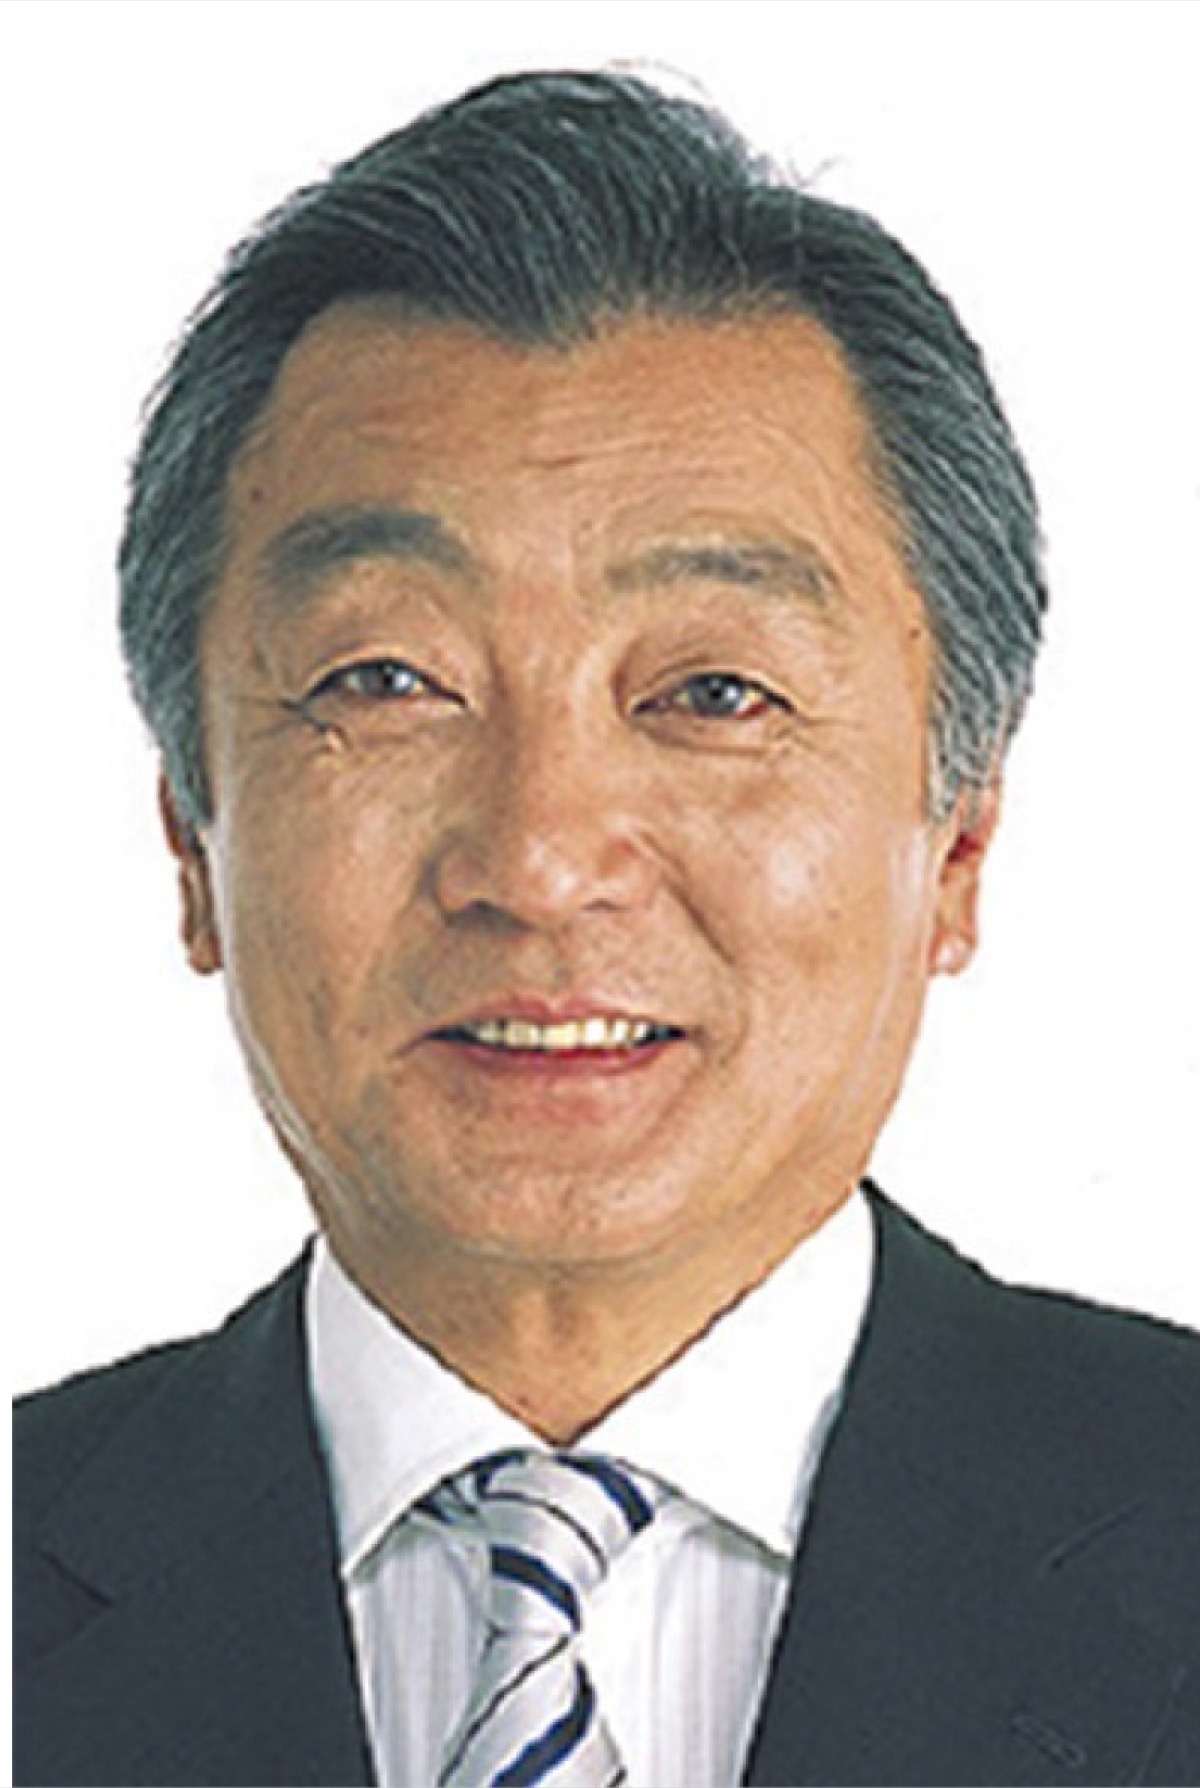 松本純氏、自民党を離党